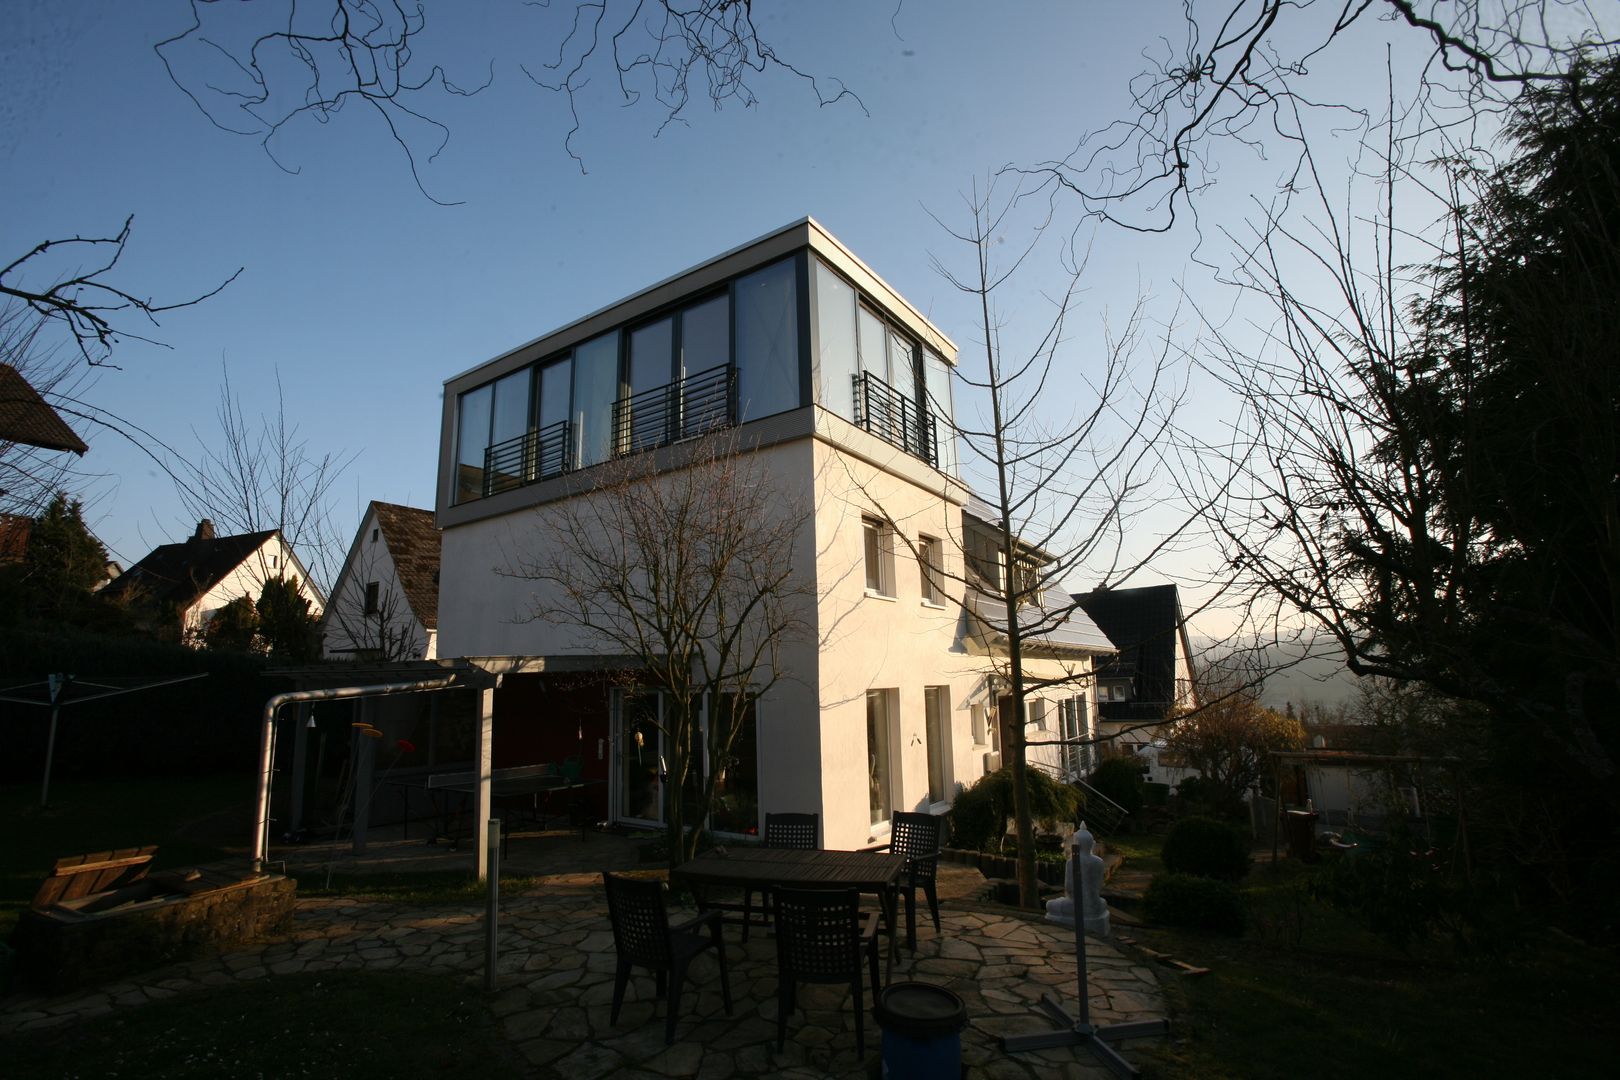 Moderne Wohnhauserweiterung in Hessen, PlanWerk Nowoczyn Architekten PlanWerk Nowoczyn Architekten Modern home